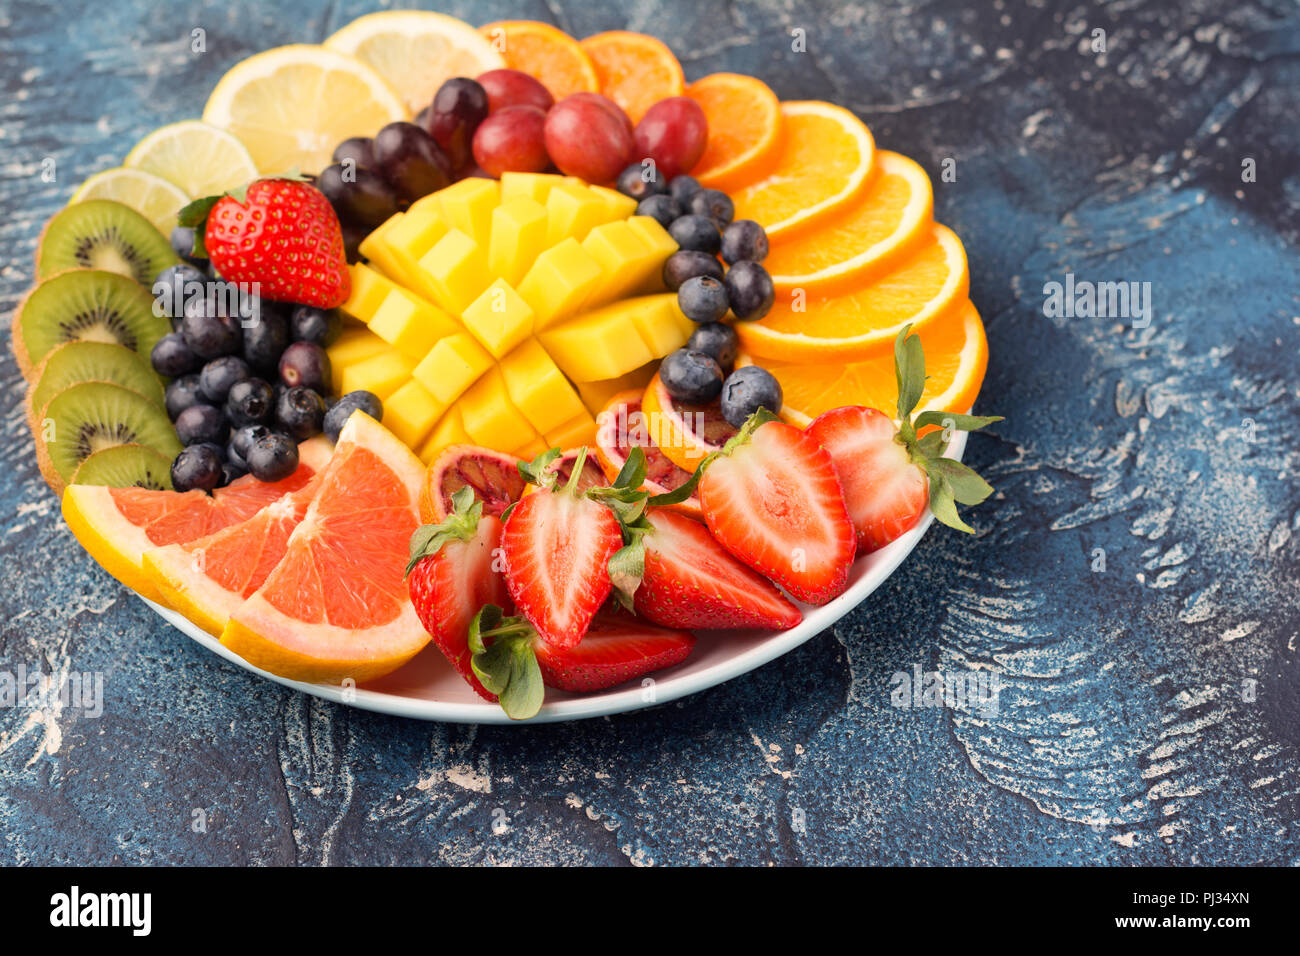 Assiette de fruits et baies sains en couleurs arc-en-ciel close up, fraises, mangue, Raisin, Oranges, kiwis, citrons sur le tableau bleu, copie de l'espace pour texte, selective focus sur la mangue Banque D'Images